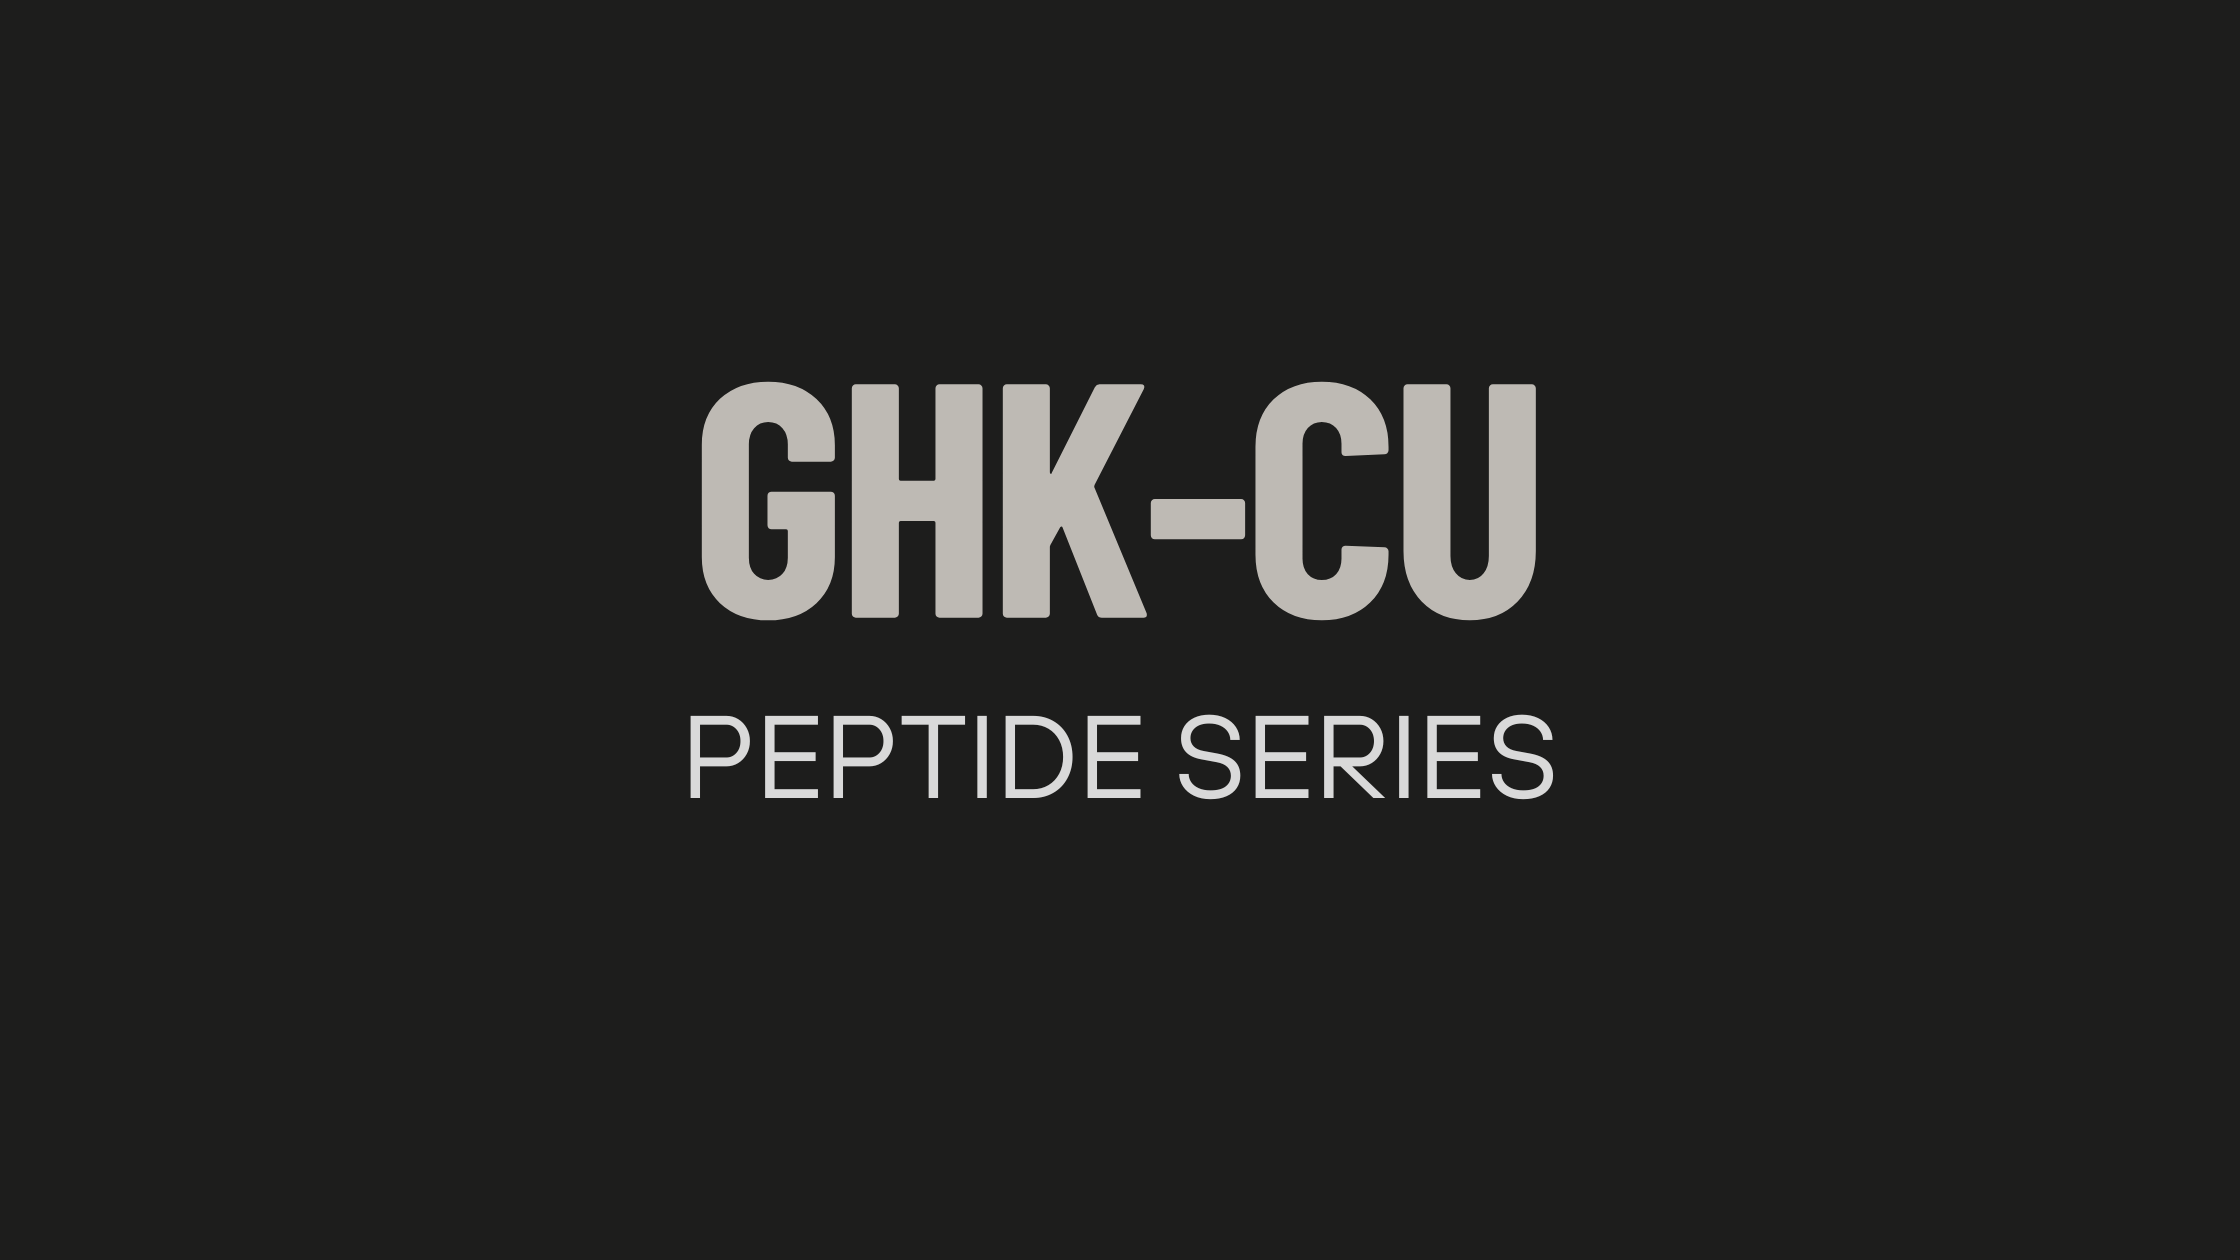 ghk-cu peptide